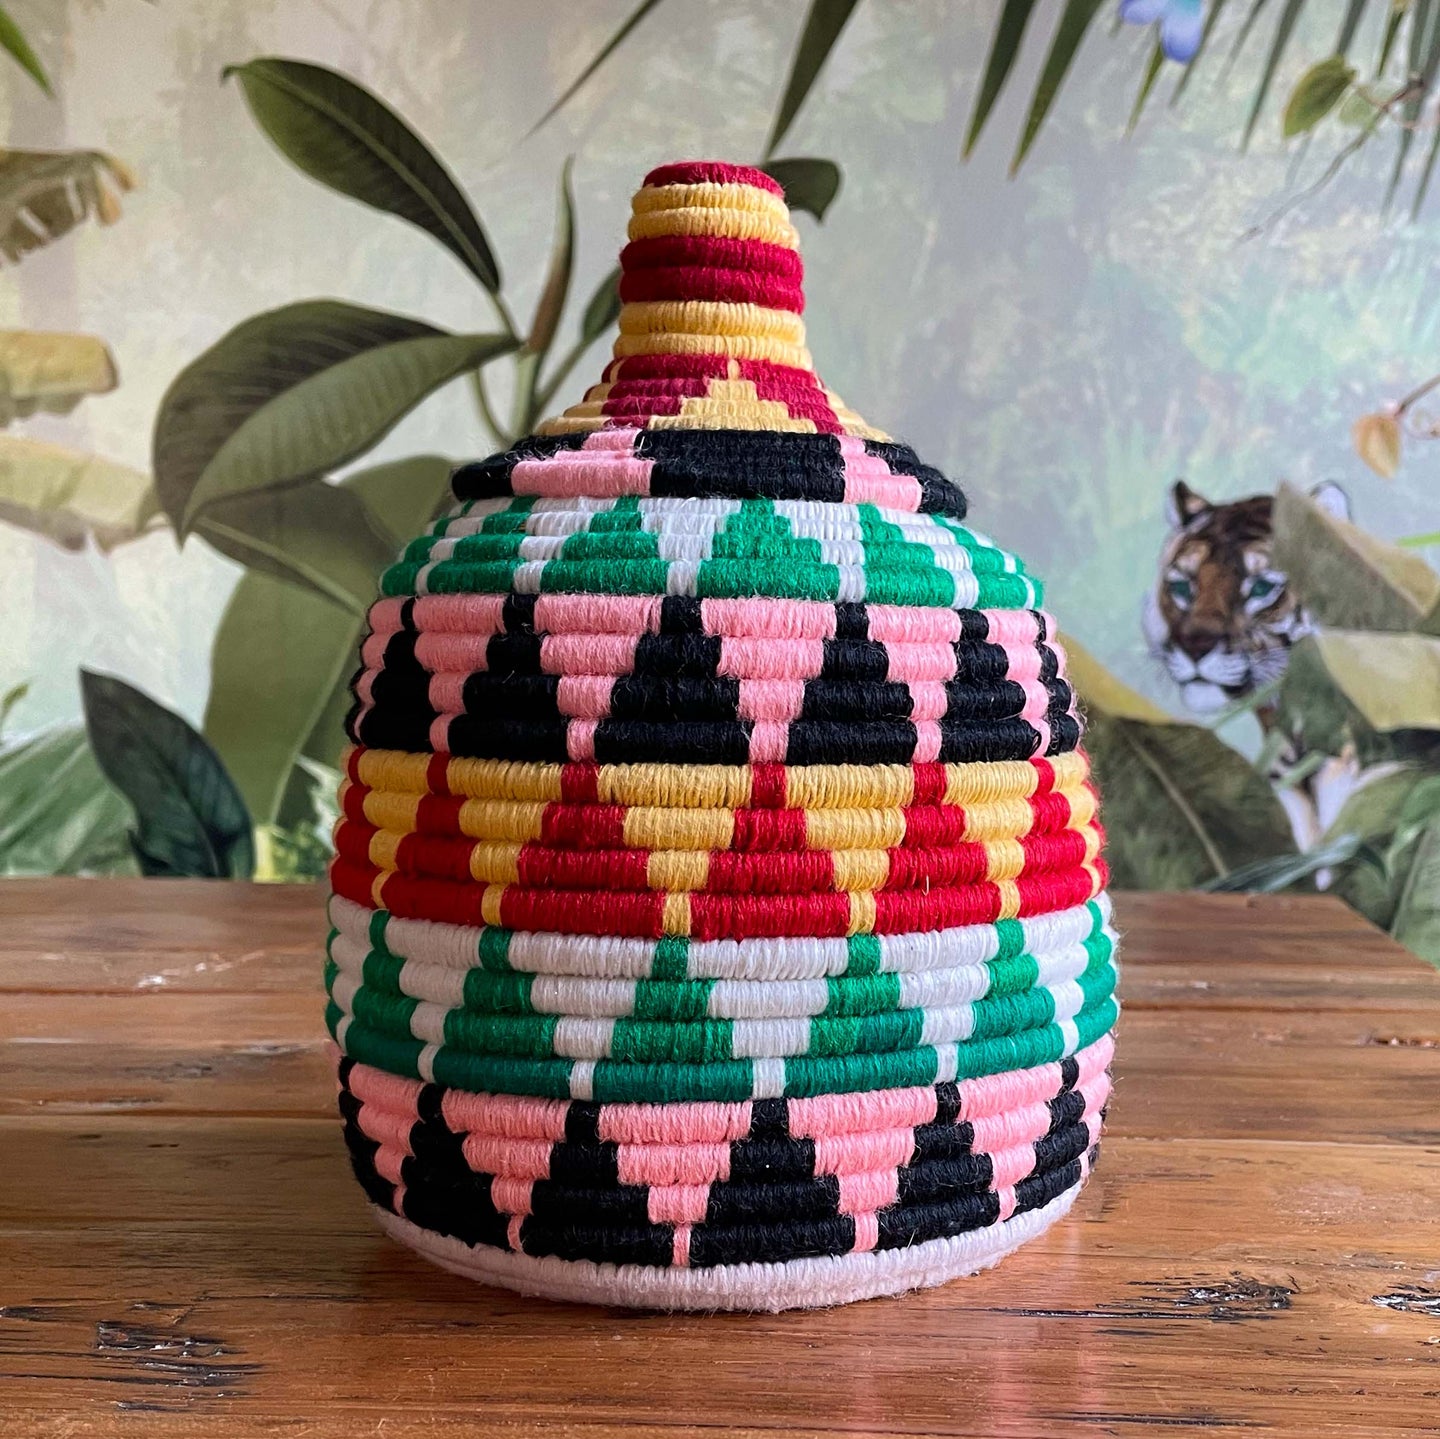 Handgefertigter Berber-Korb im Ethnologischen-Style aus nachhaltigen Palmblätter mit Baumwollgarn in bunten Farben